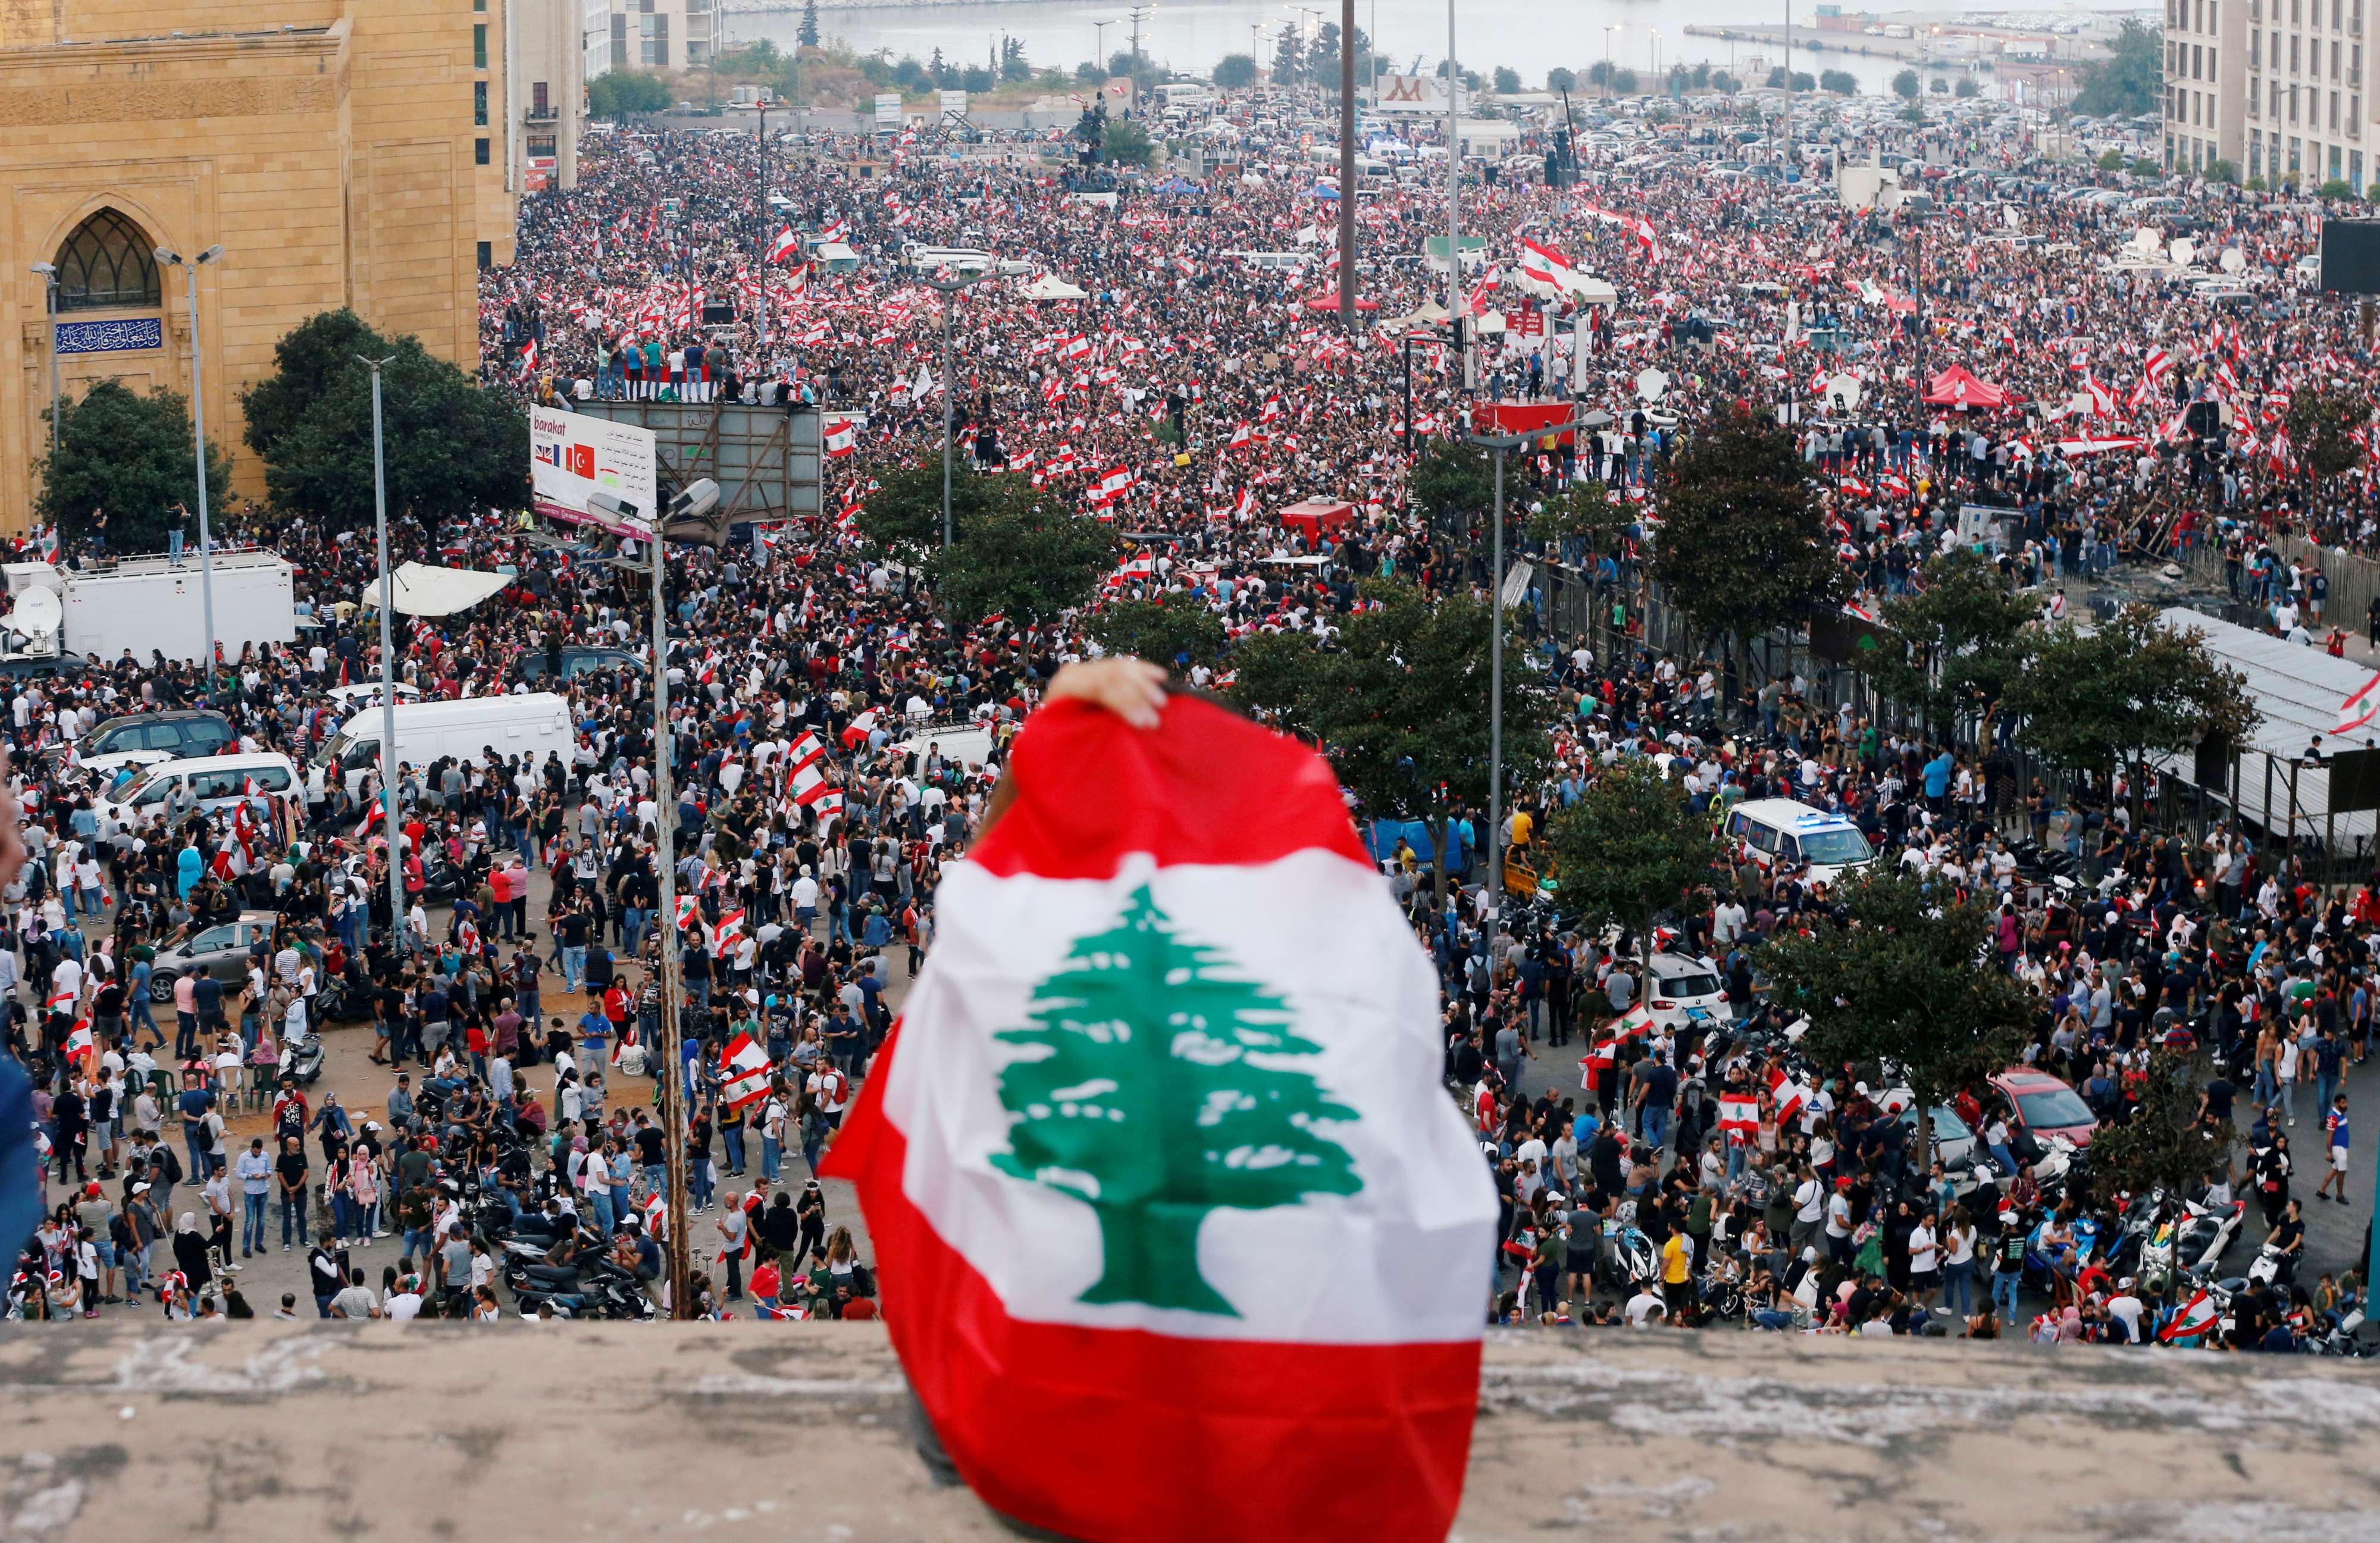 اللبنانيون يحتجون بسبب تداعيات الازمة الاقتصادية والمالية